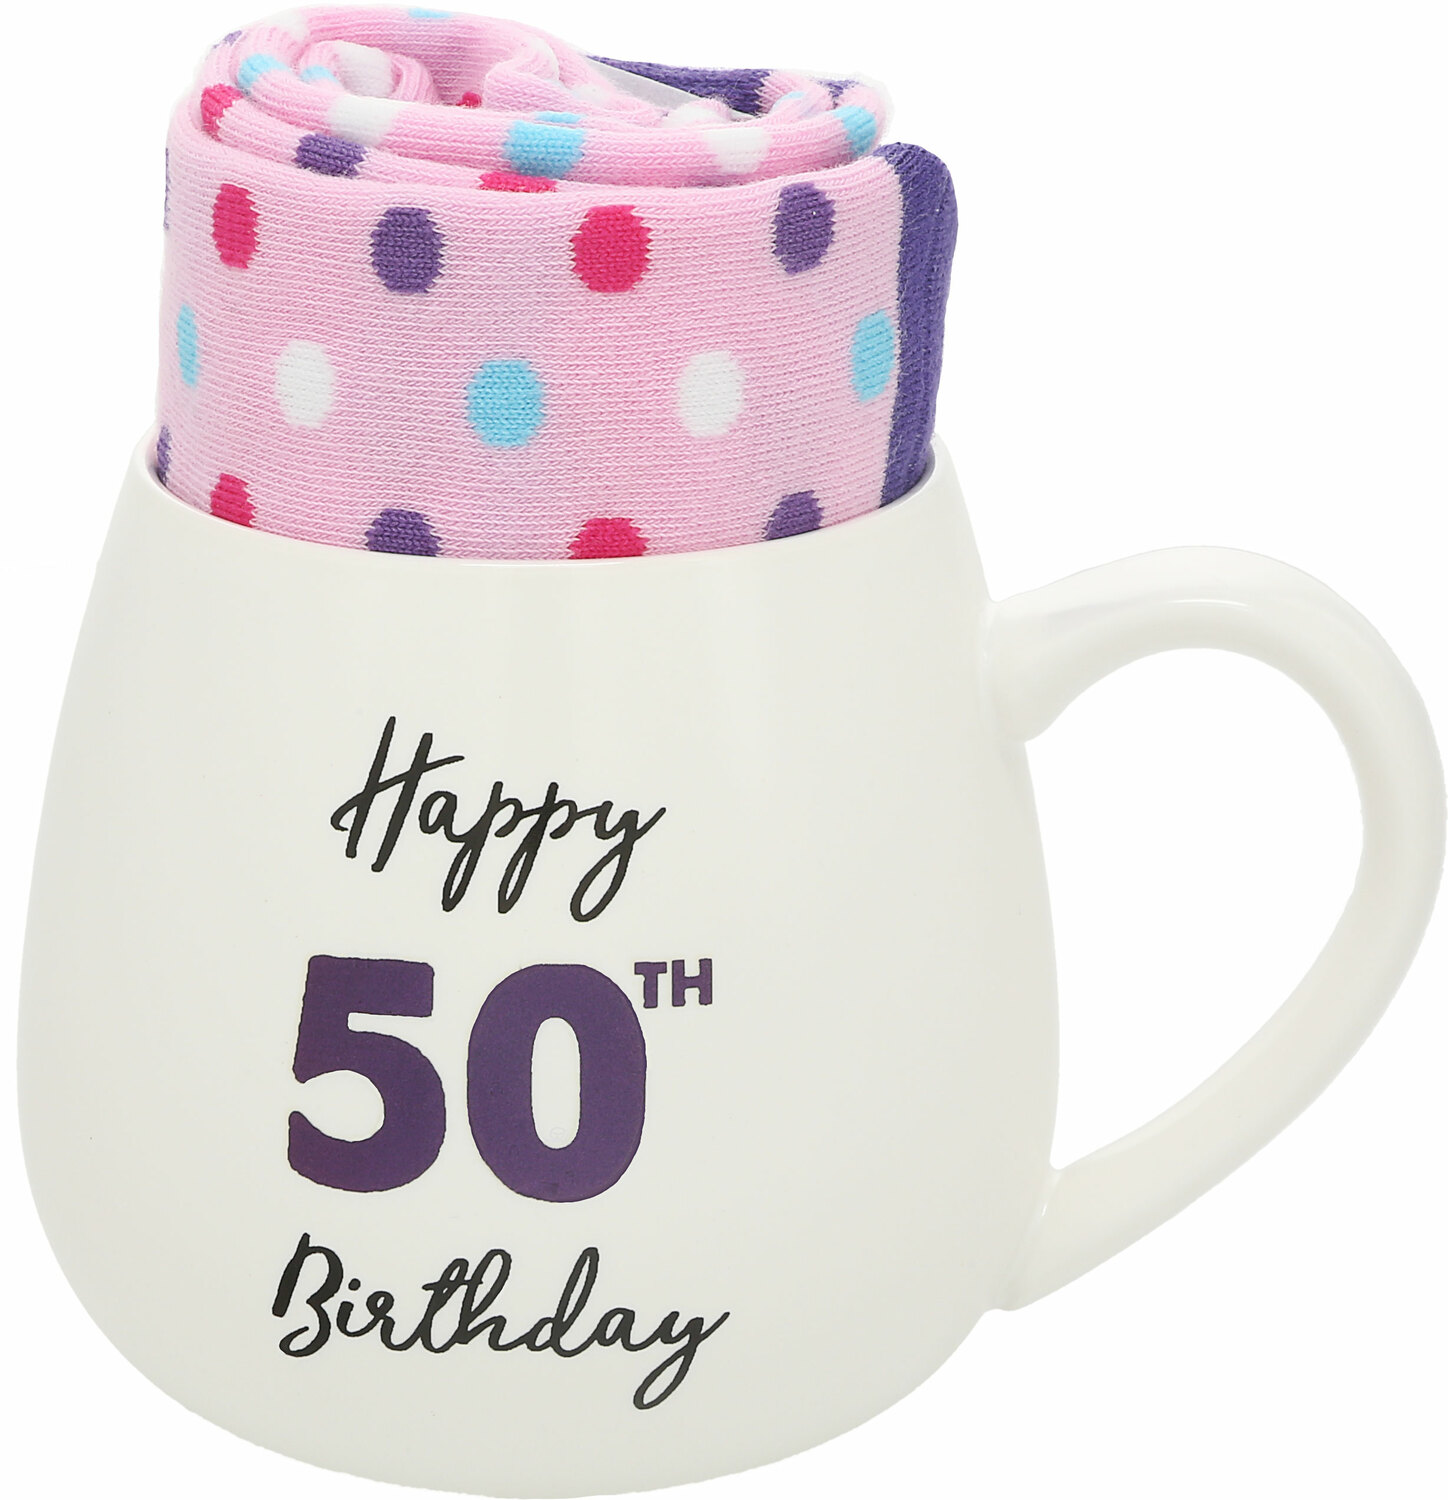  50th Birthday by Warm & Toe-sty -  50th Birthday - 15.5 oz Mug and Sock Set